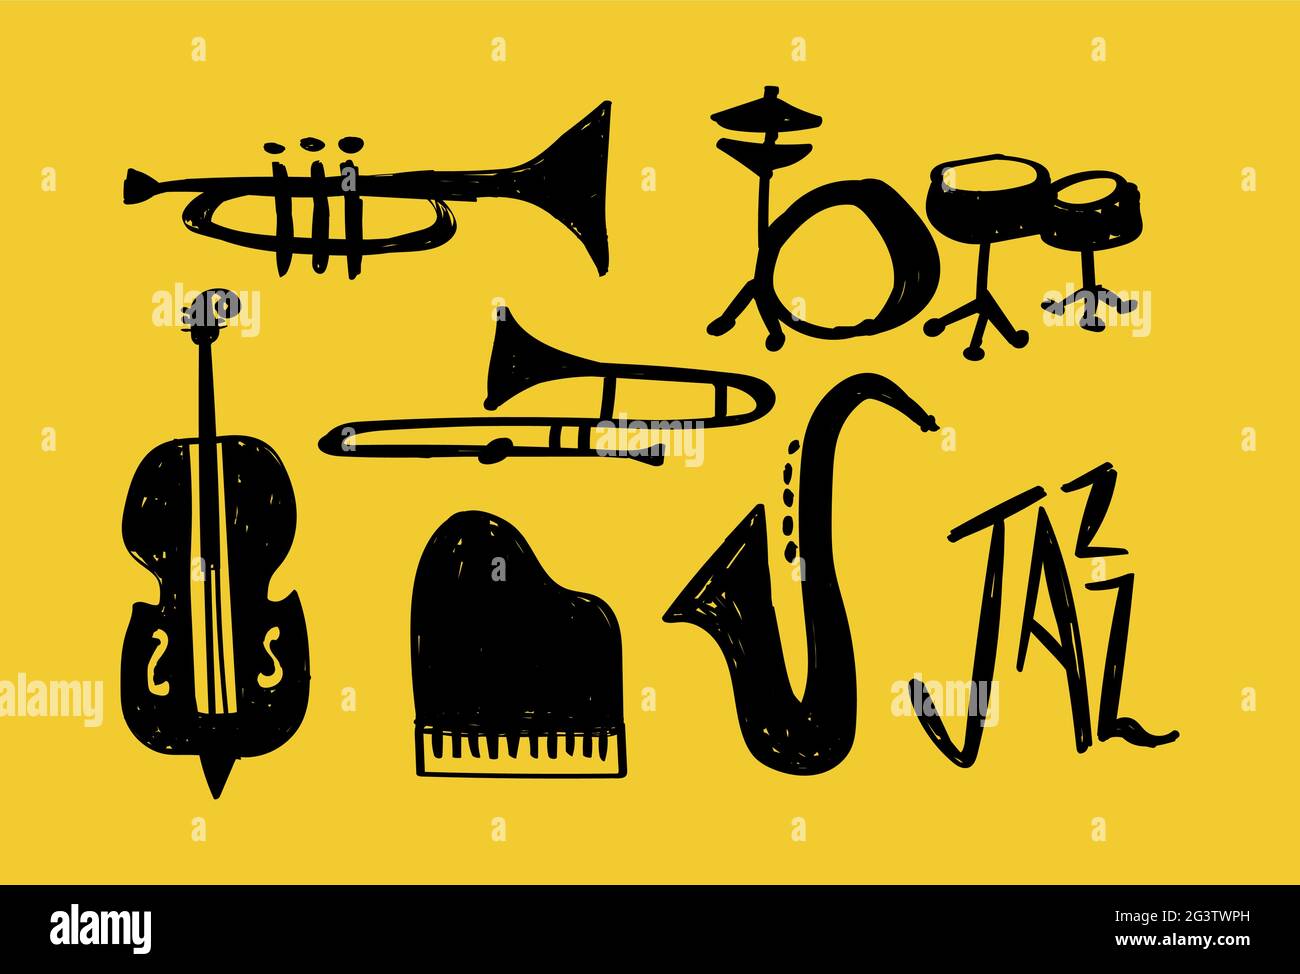 Illustration de l'ensemble d'instruments de musique jazz, dessin animé à la main, décoration de musique. Comprend piano, saxophone, trompette et tambour. Illustration de Vecteur